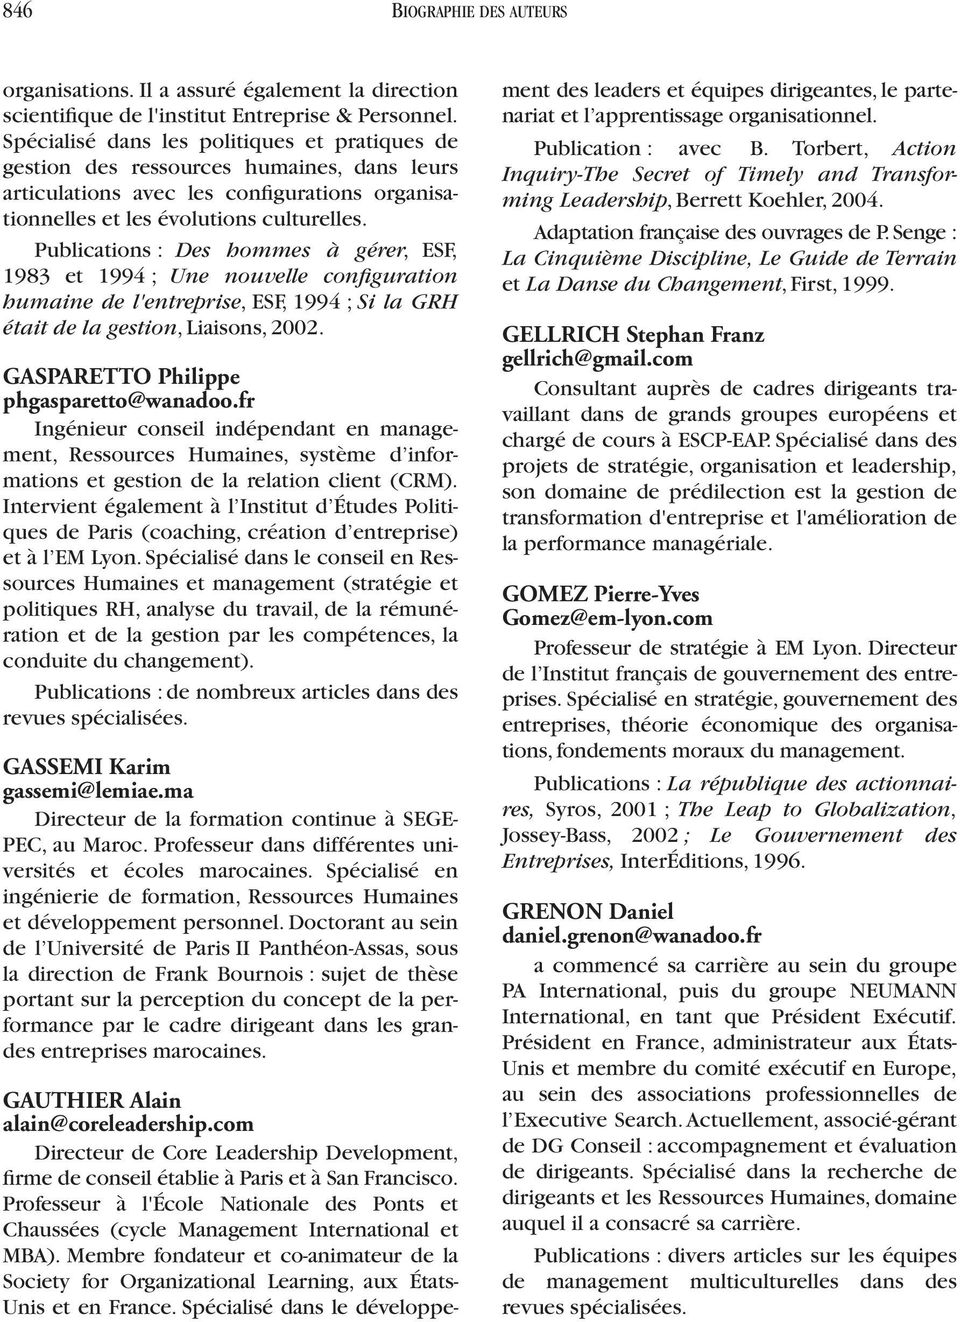 Publications : Des hommes à gérer, ESF, 1983 et 1994 ; Une nouvelle configuration humaine de l'entreprise, ESF, 1994 ; Si la GRH était de la gestion, Liaisons, 2002.